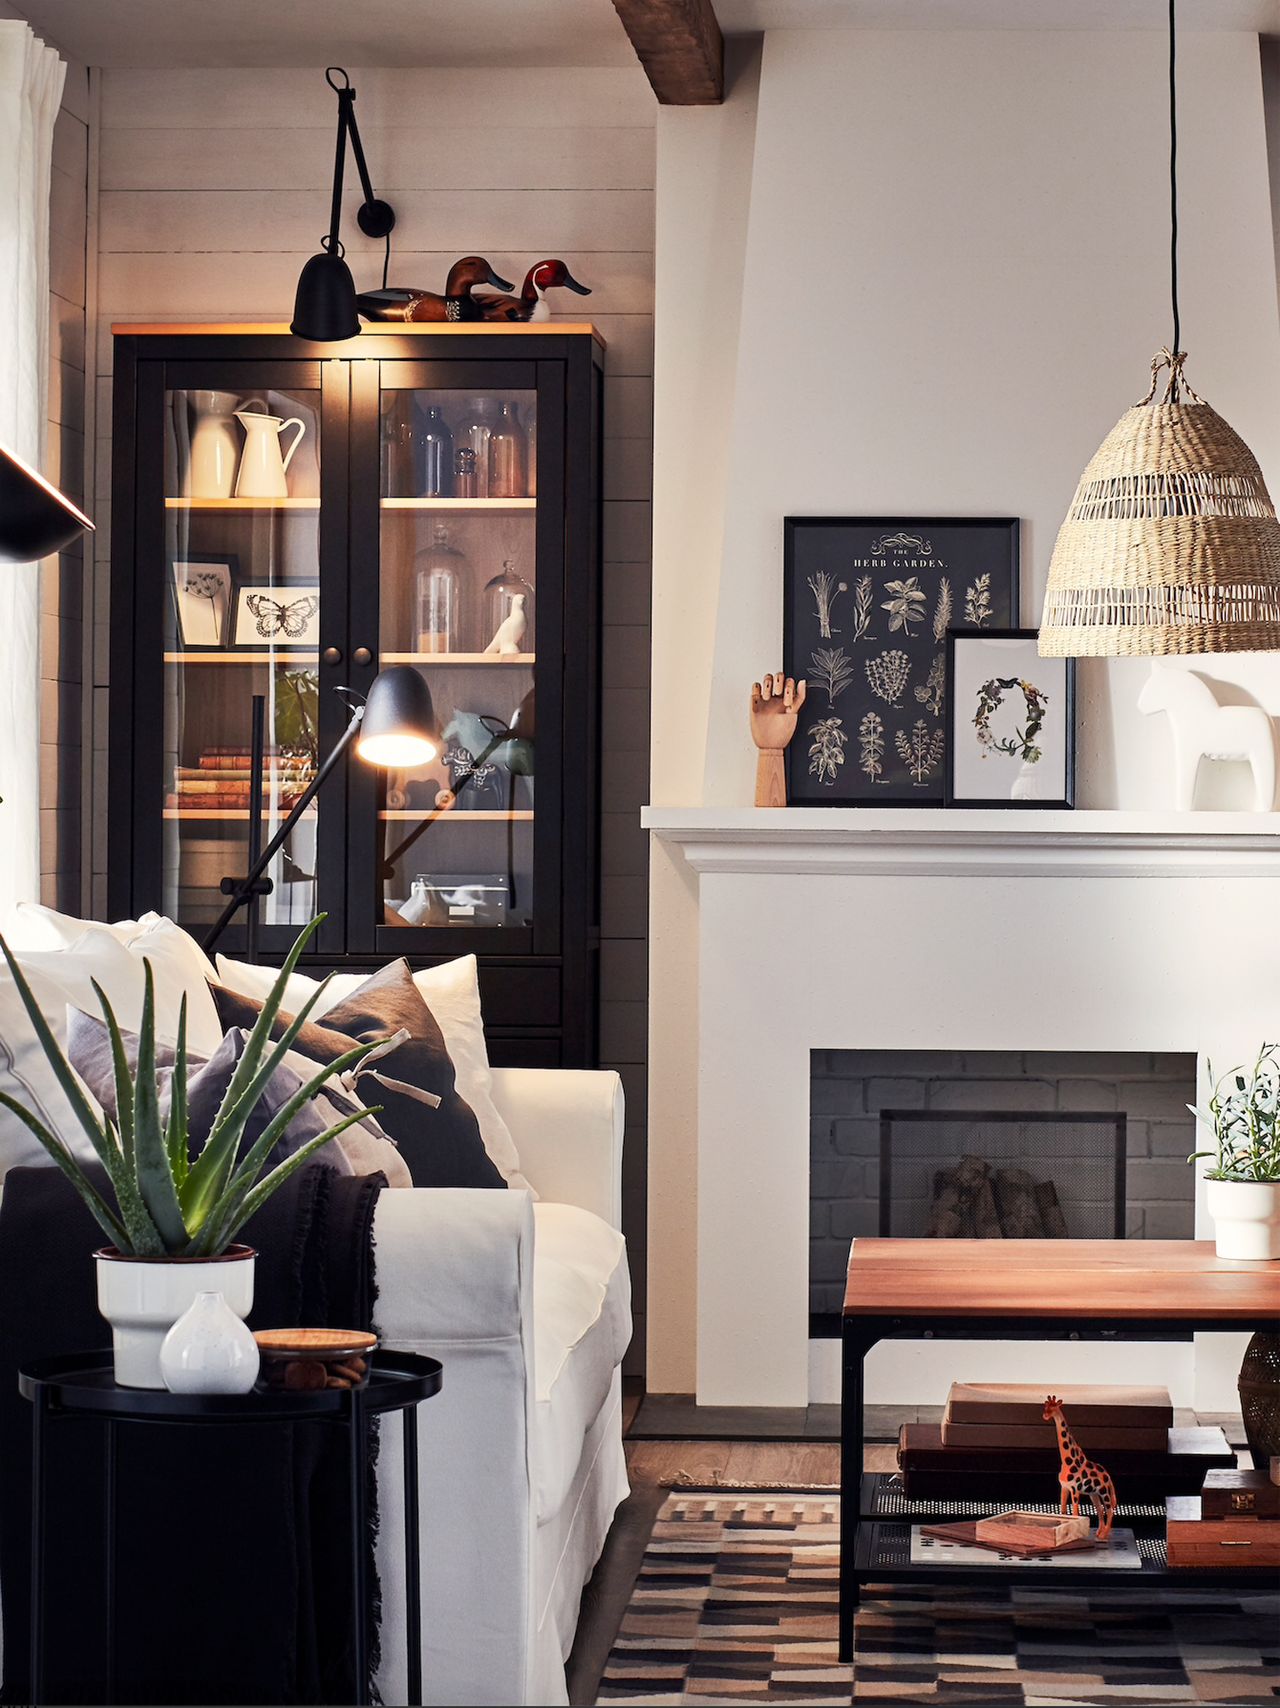 Ideas de sala de estar en crema: sala de estar en crema con detalles negros audaces a través de marcos de muebles y estanterías